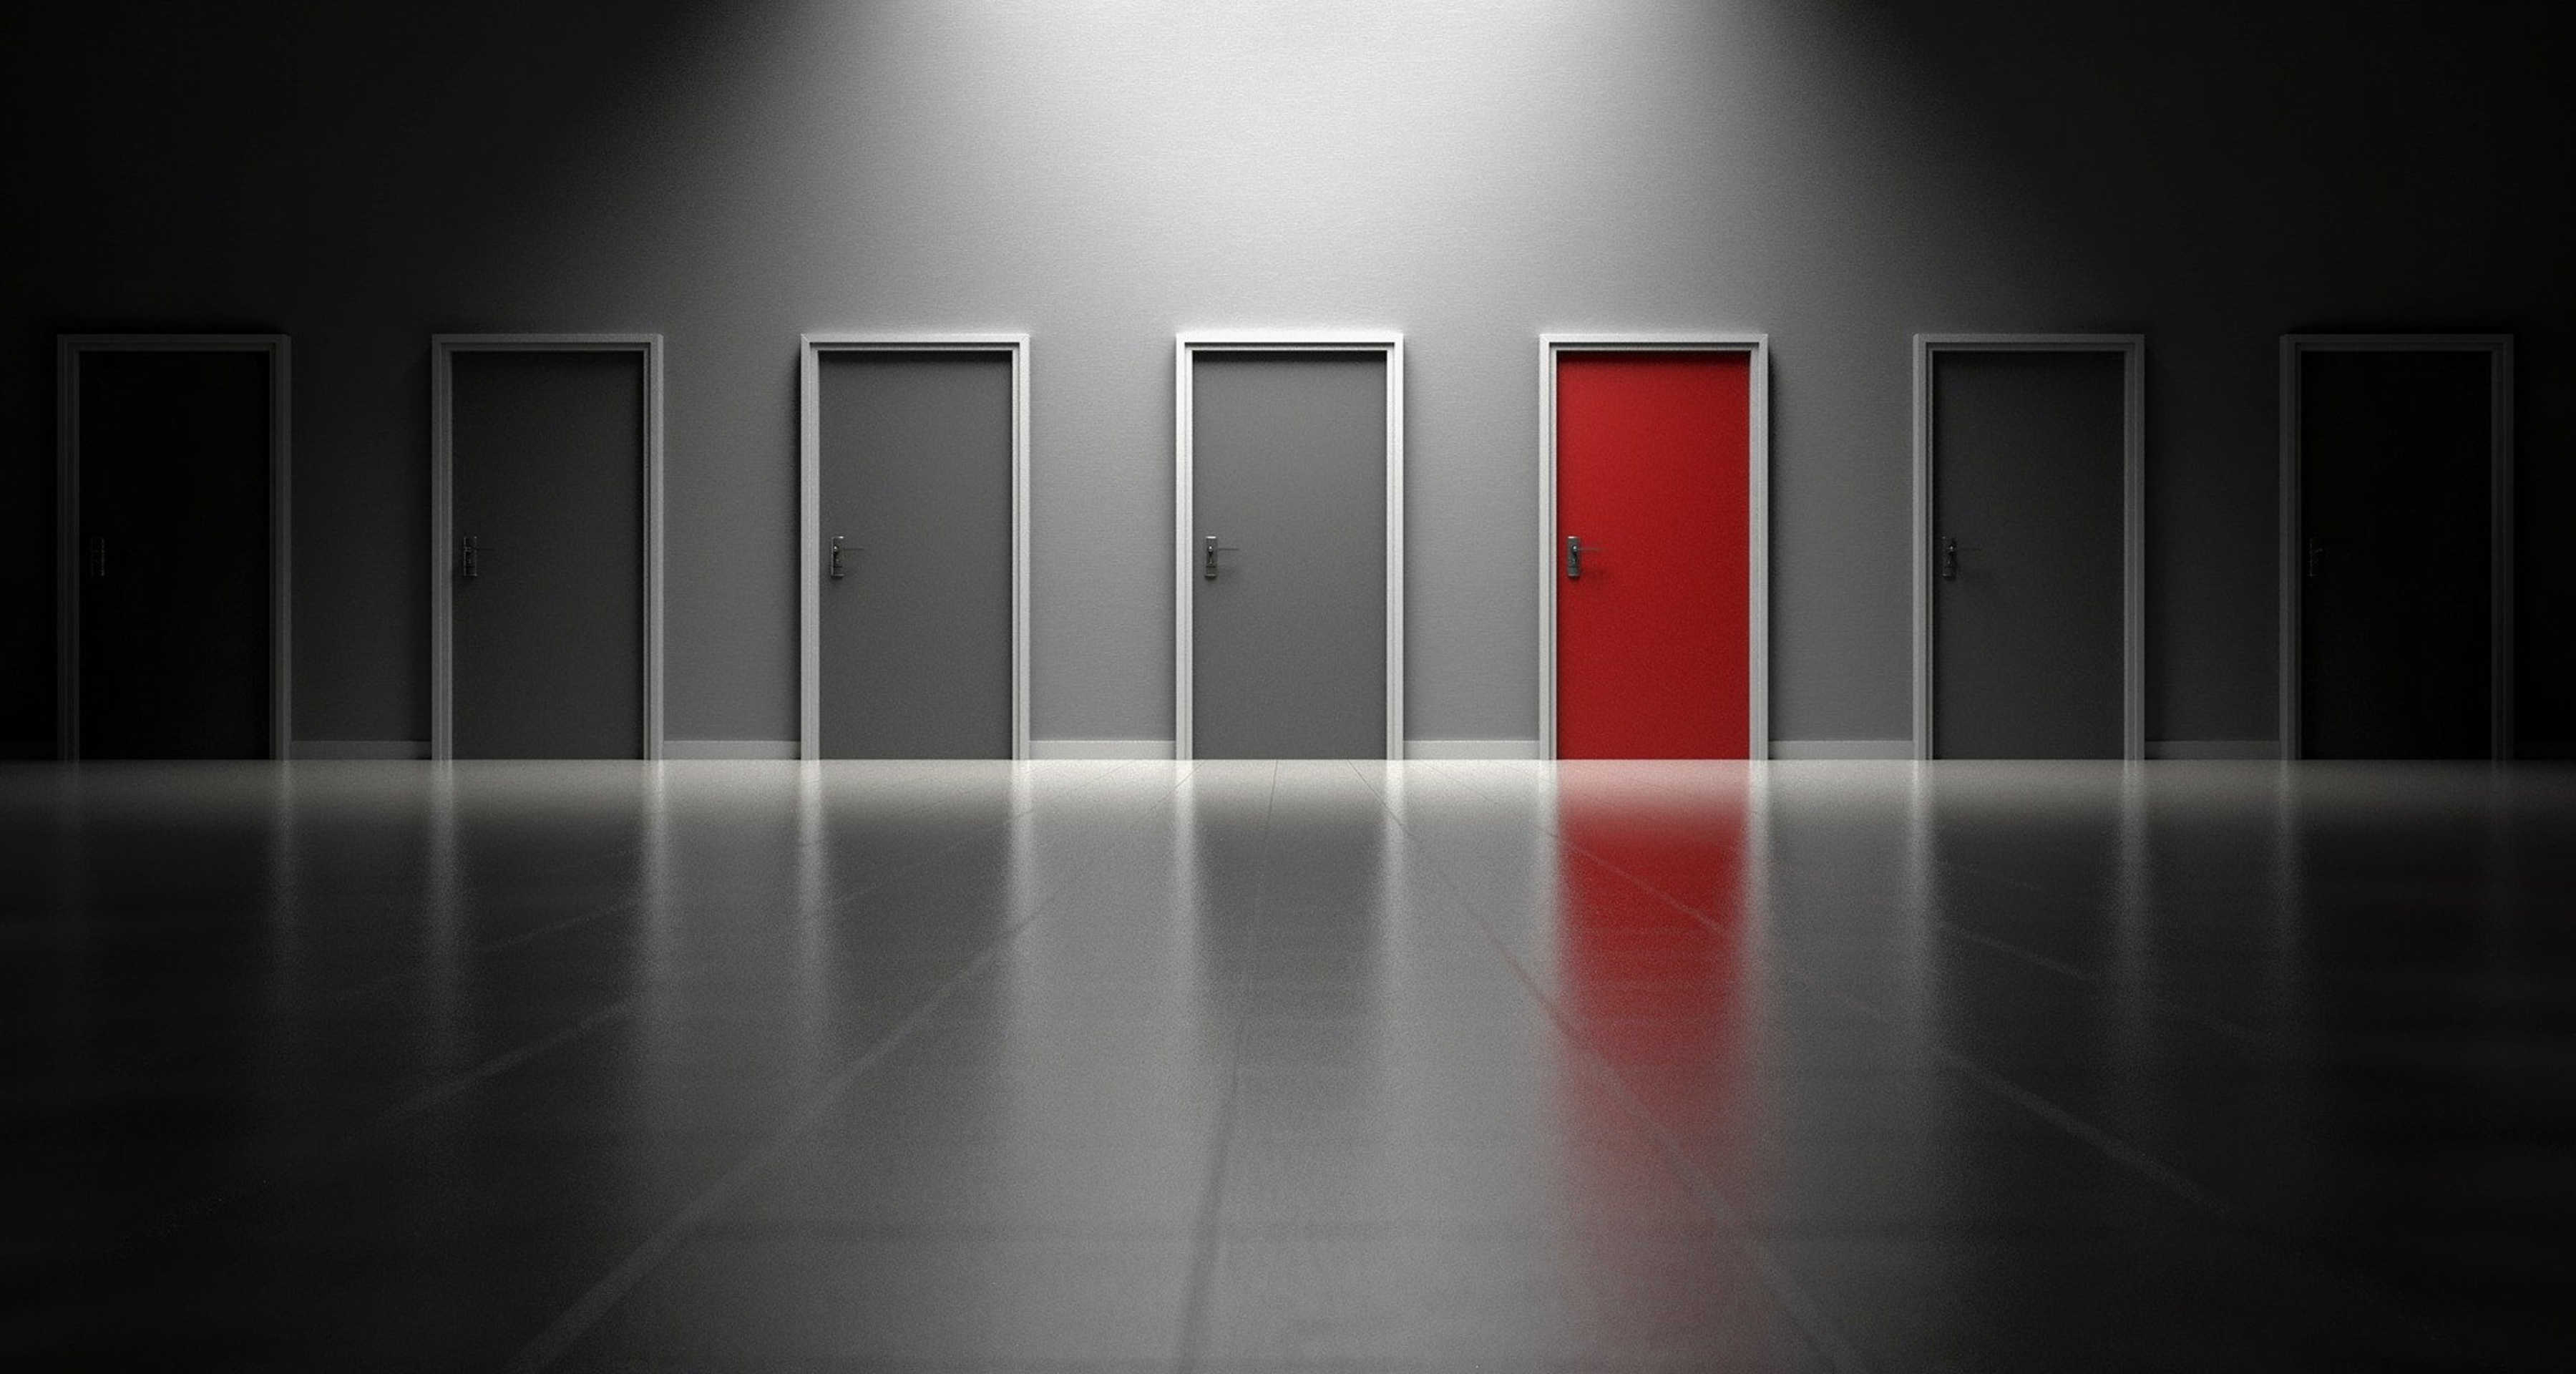 Graue Türen und eine rote Tür zur Visualisierung von Einzigartigkeit